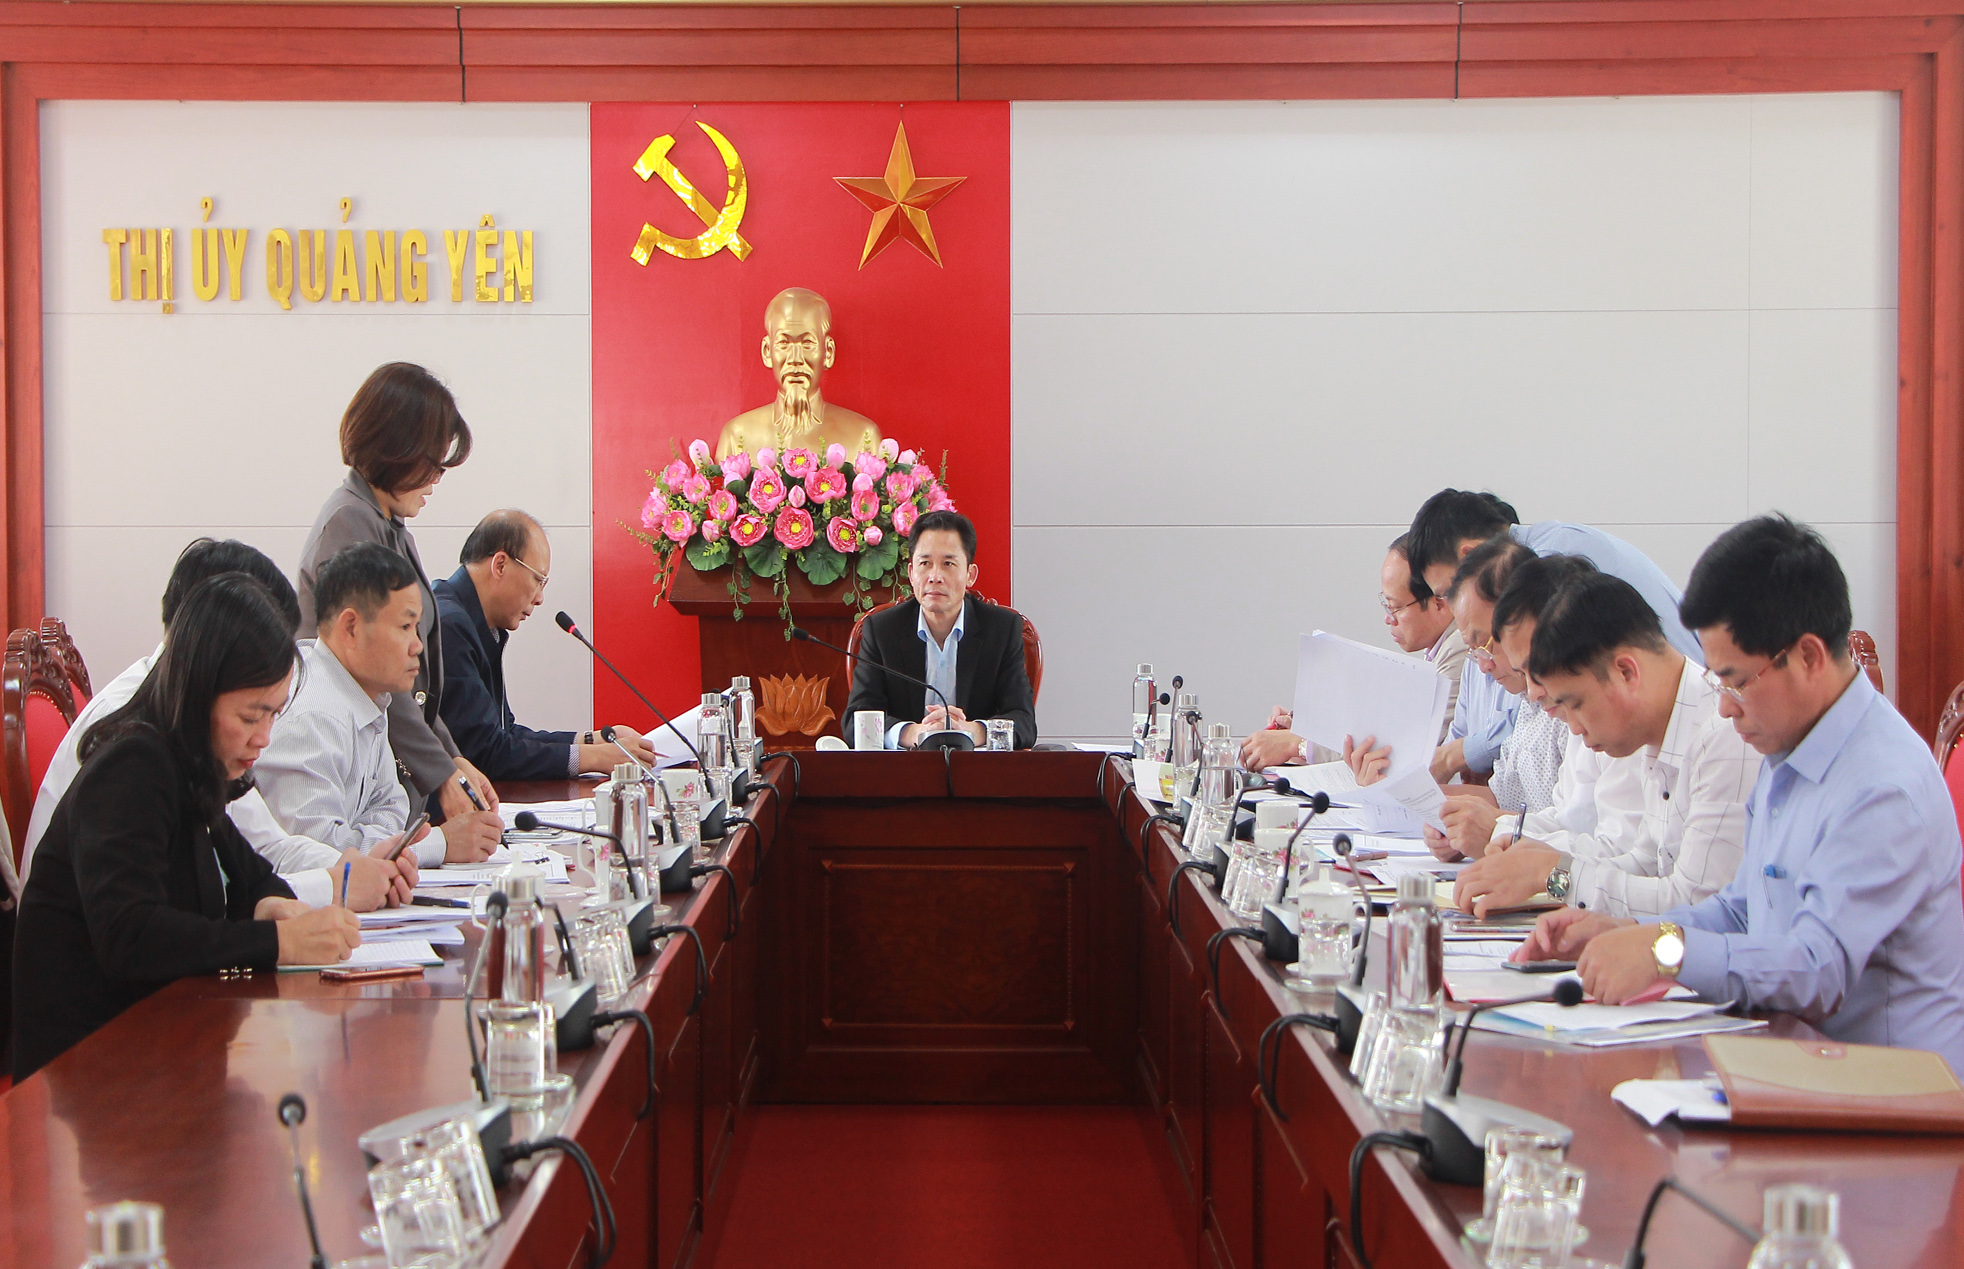 Thường trực Thị ủy Quảng Yên nghe công tác chuẩn bị đại hội điểm cấp cơ sở.